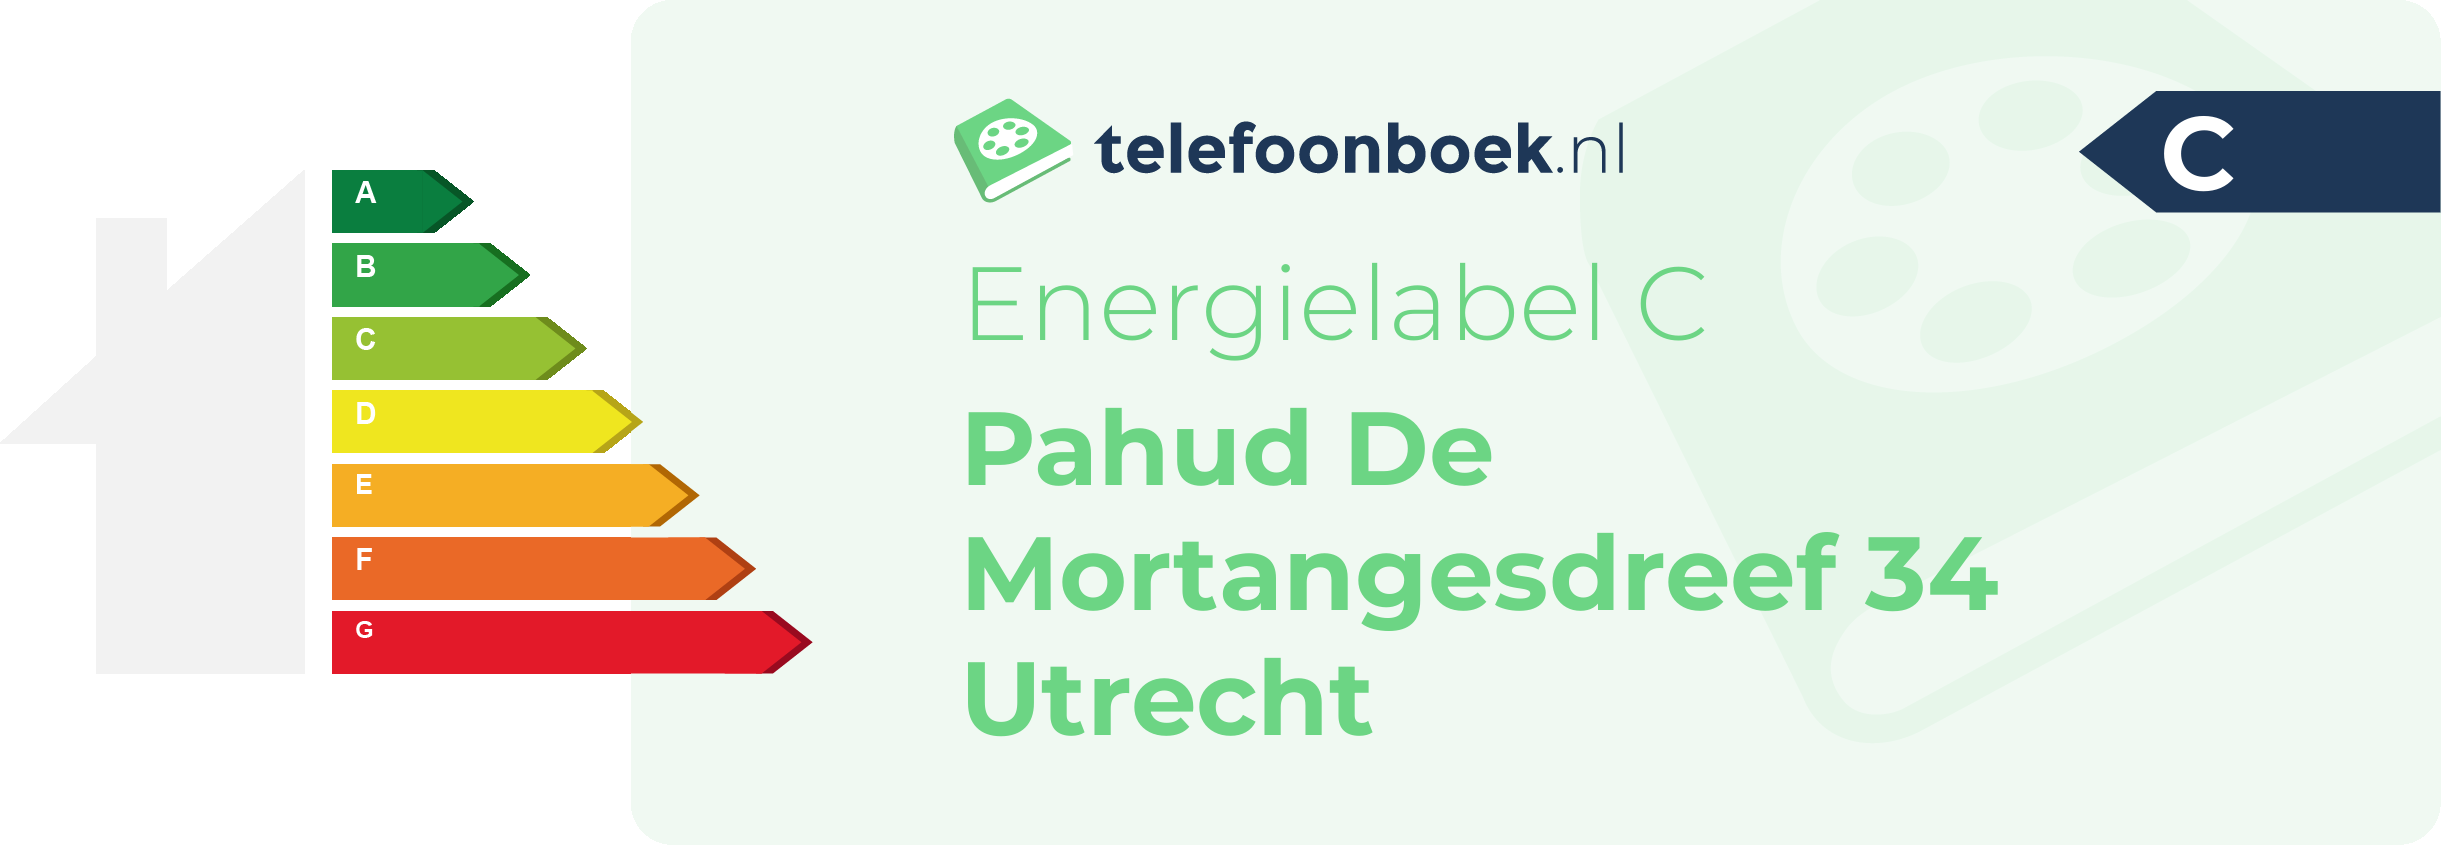 Energielabel Pahud De Mortangesdreef 34 Utrecht